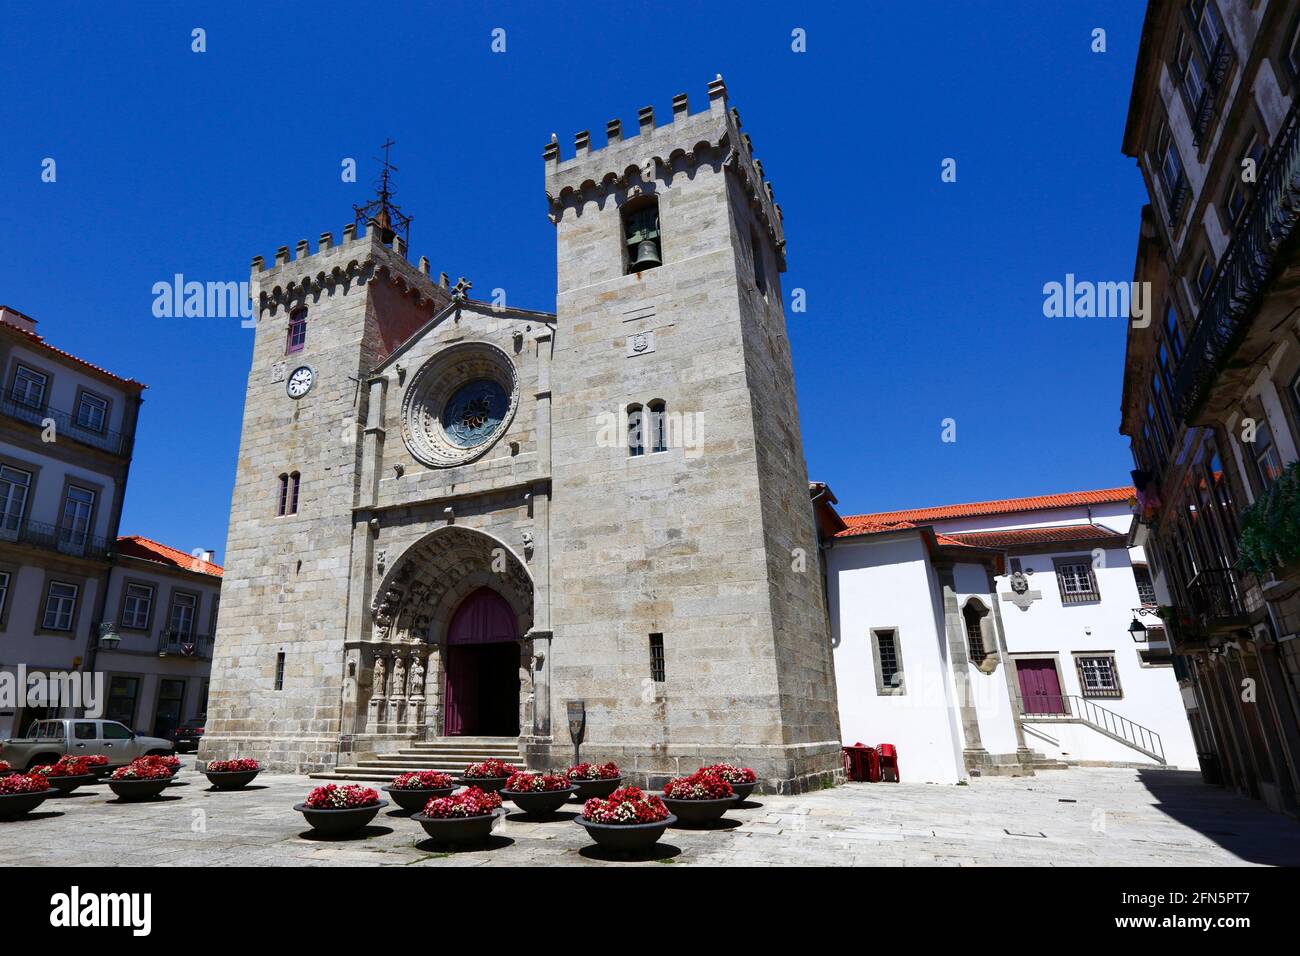 Facciata dell'ingresso principale e torri della cattedrale gotica romanica / Igreja Matriz e fiori in estate, Viana do Castelo, Portogallo settentrionale Foto Stock